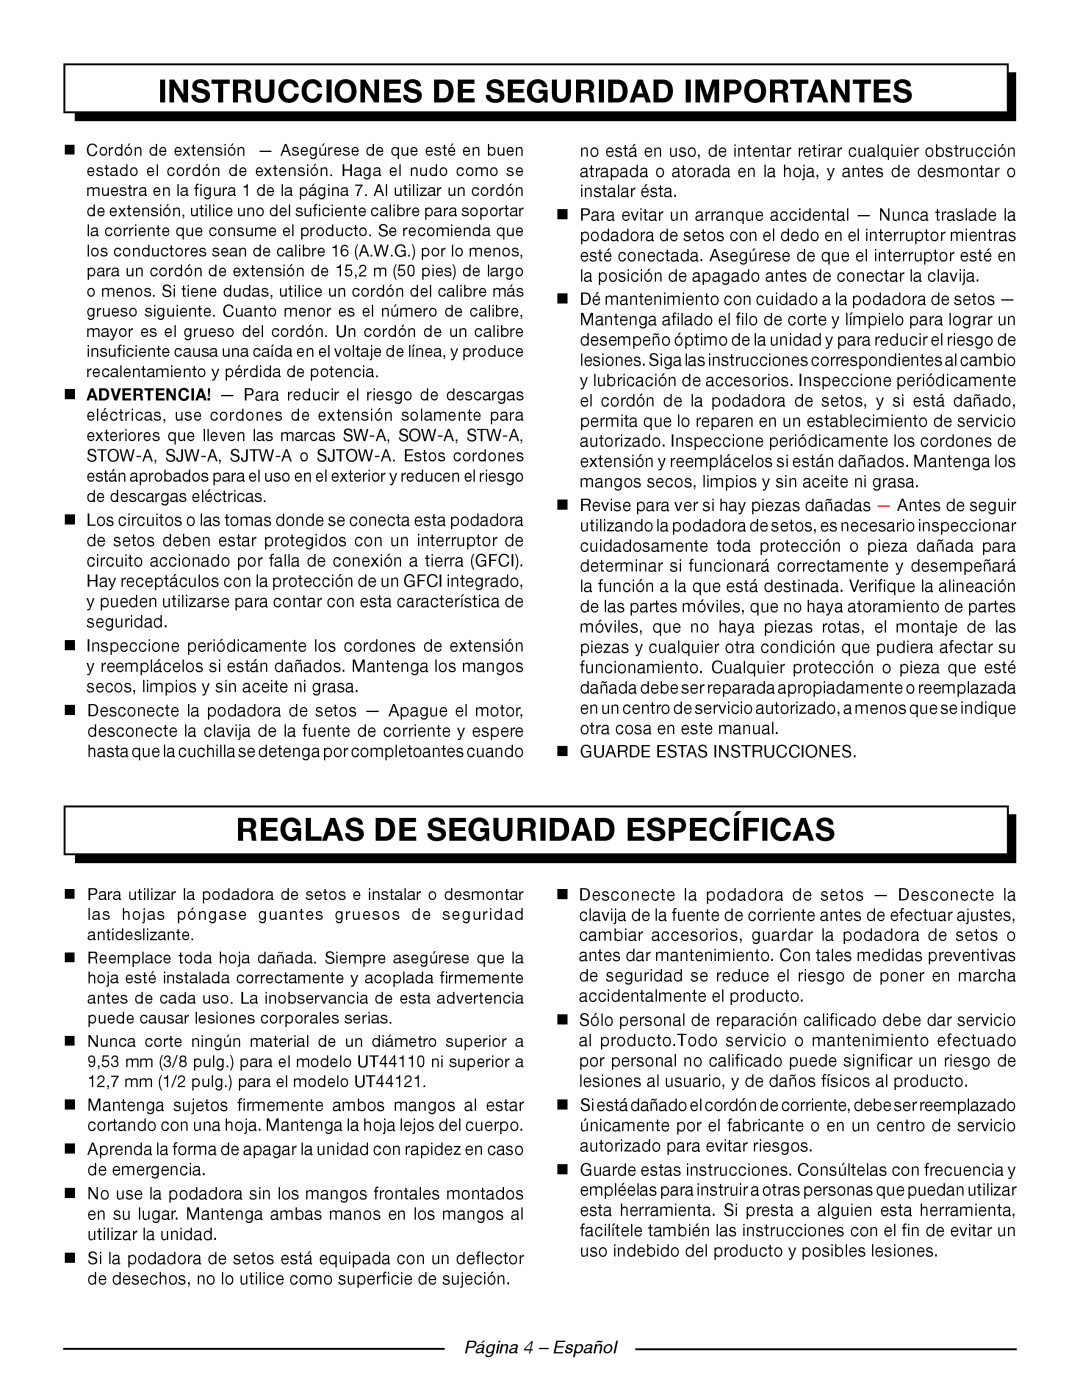 Homelite UT44121 Reglas De Seguridad Específicas, Página 4 - Español, Instrucciones De Seguridad Importantes 